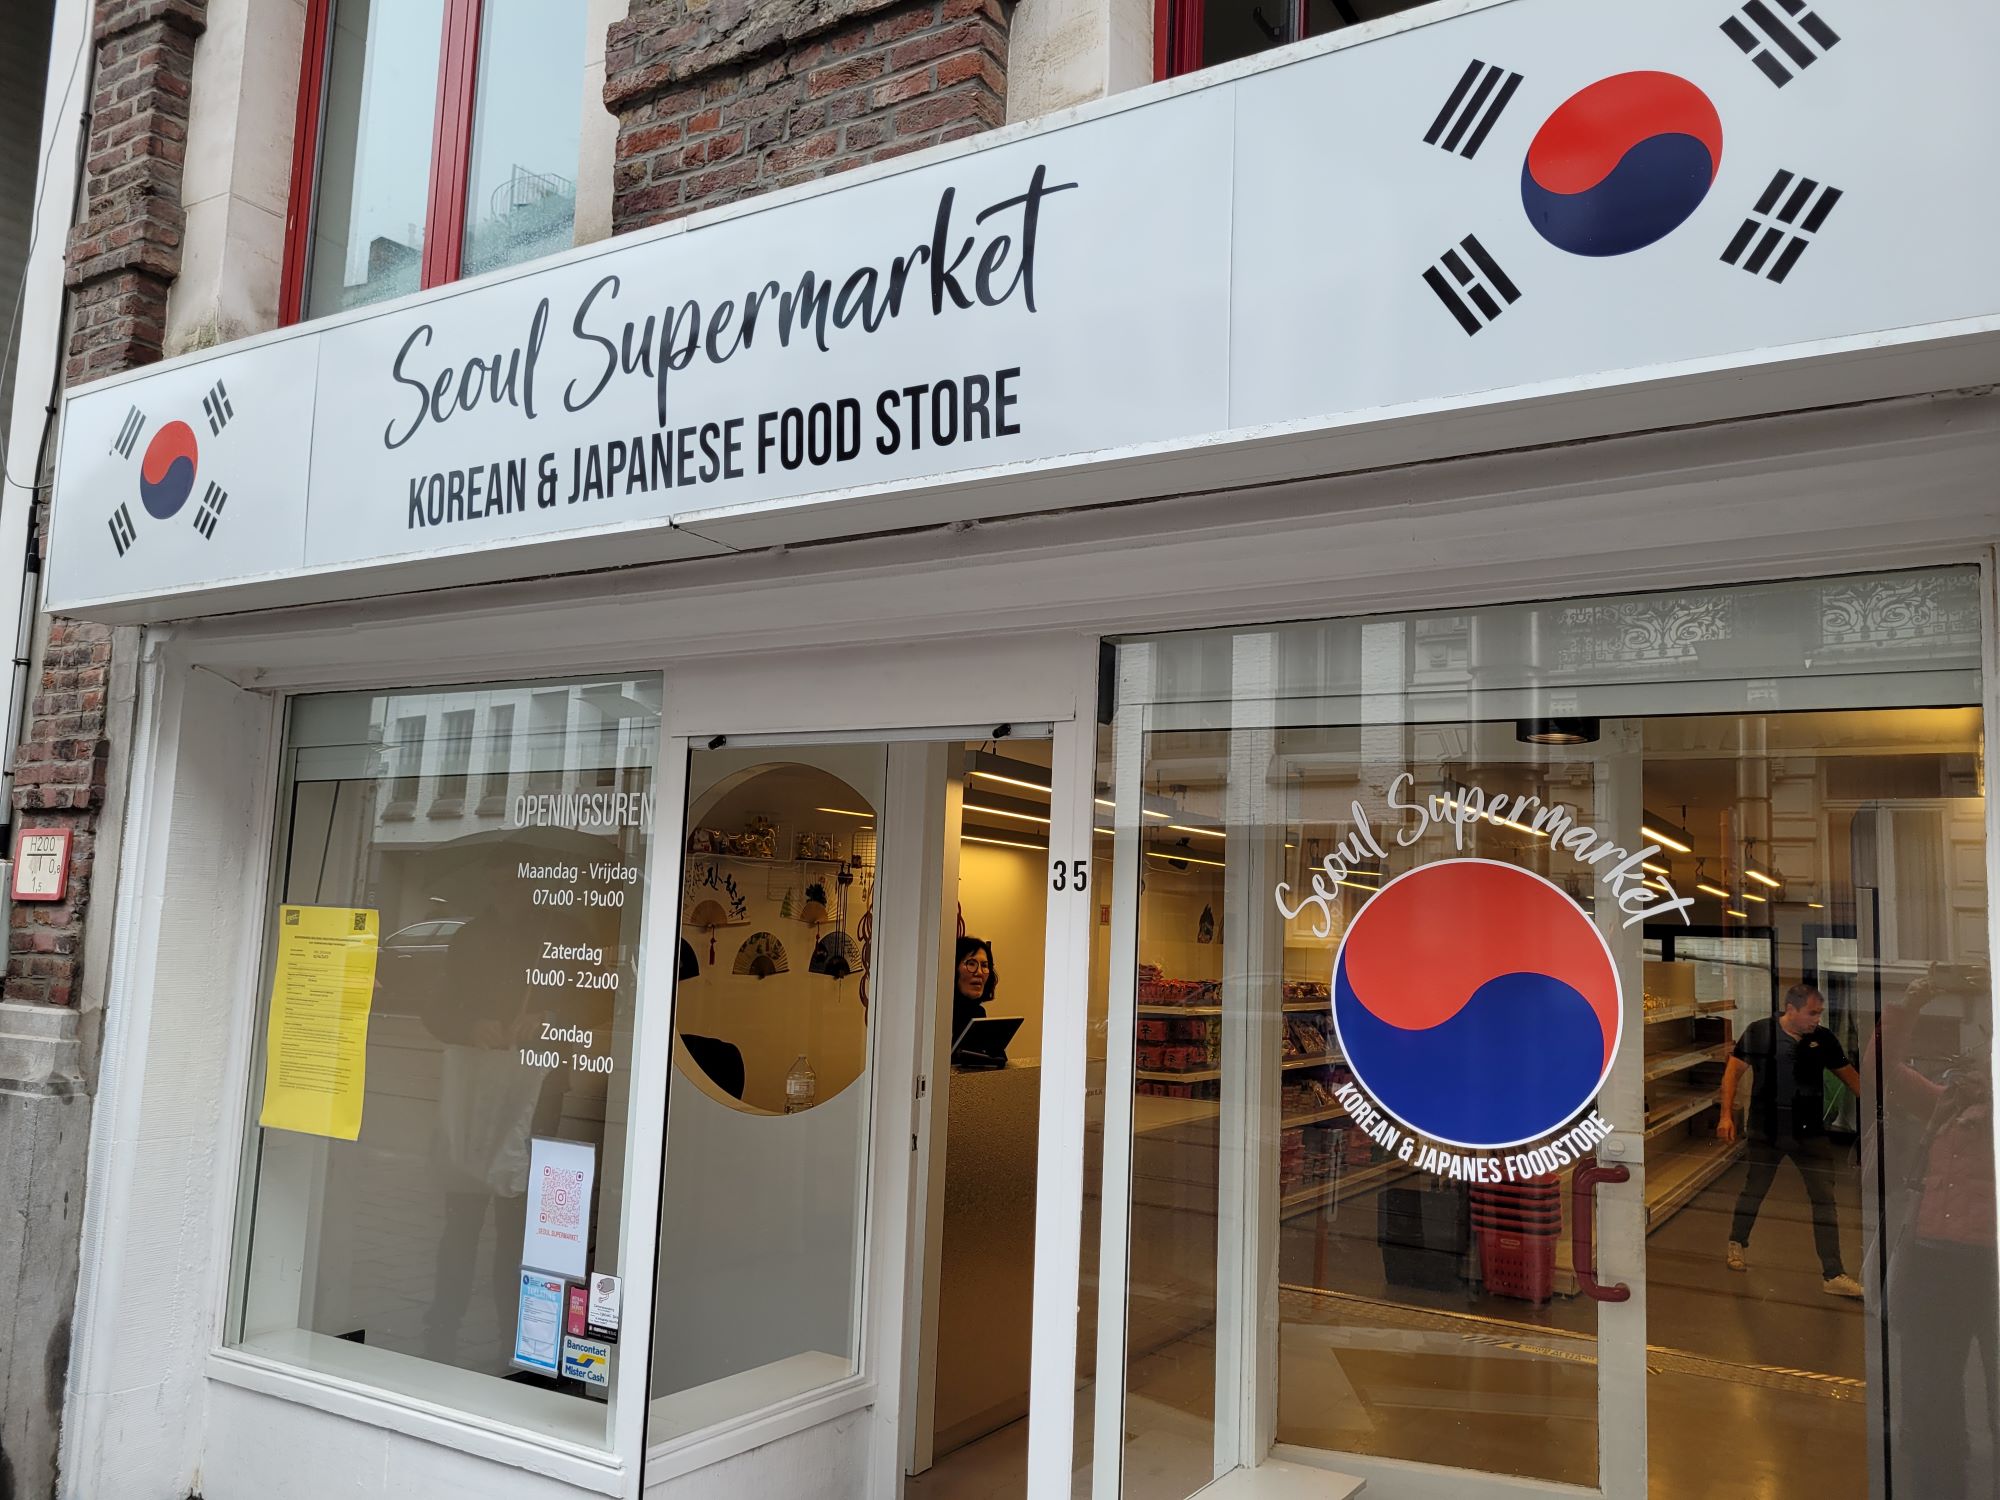 < 서울 슈퍼마켓의 외관 - 출처: 통신원 촬영 >